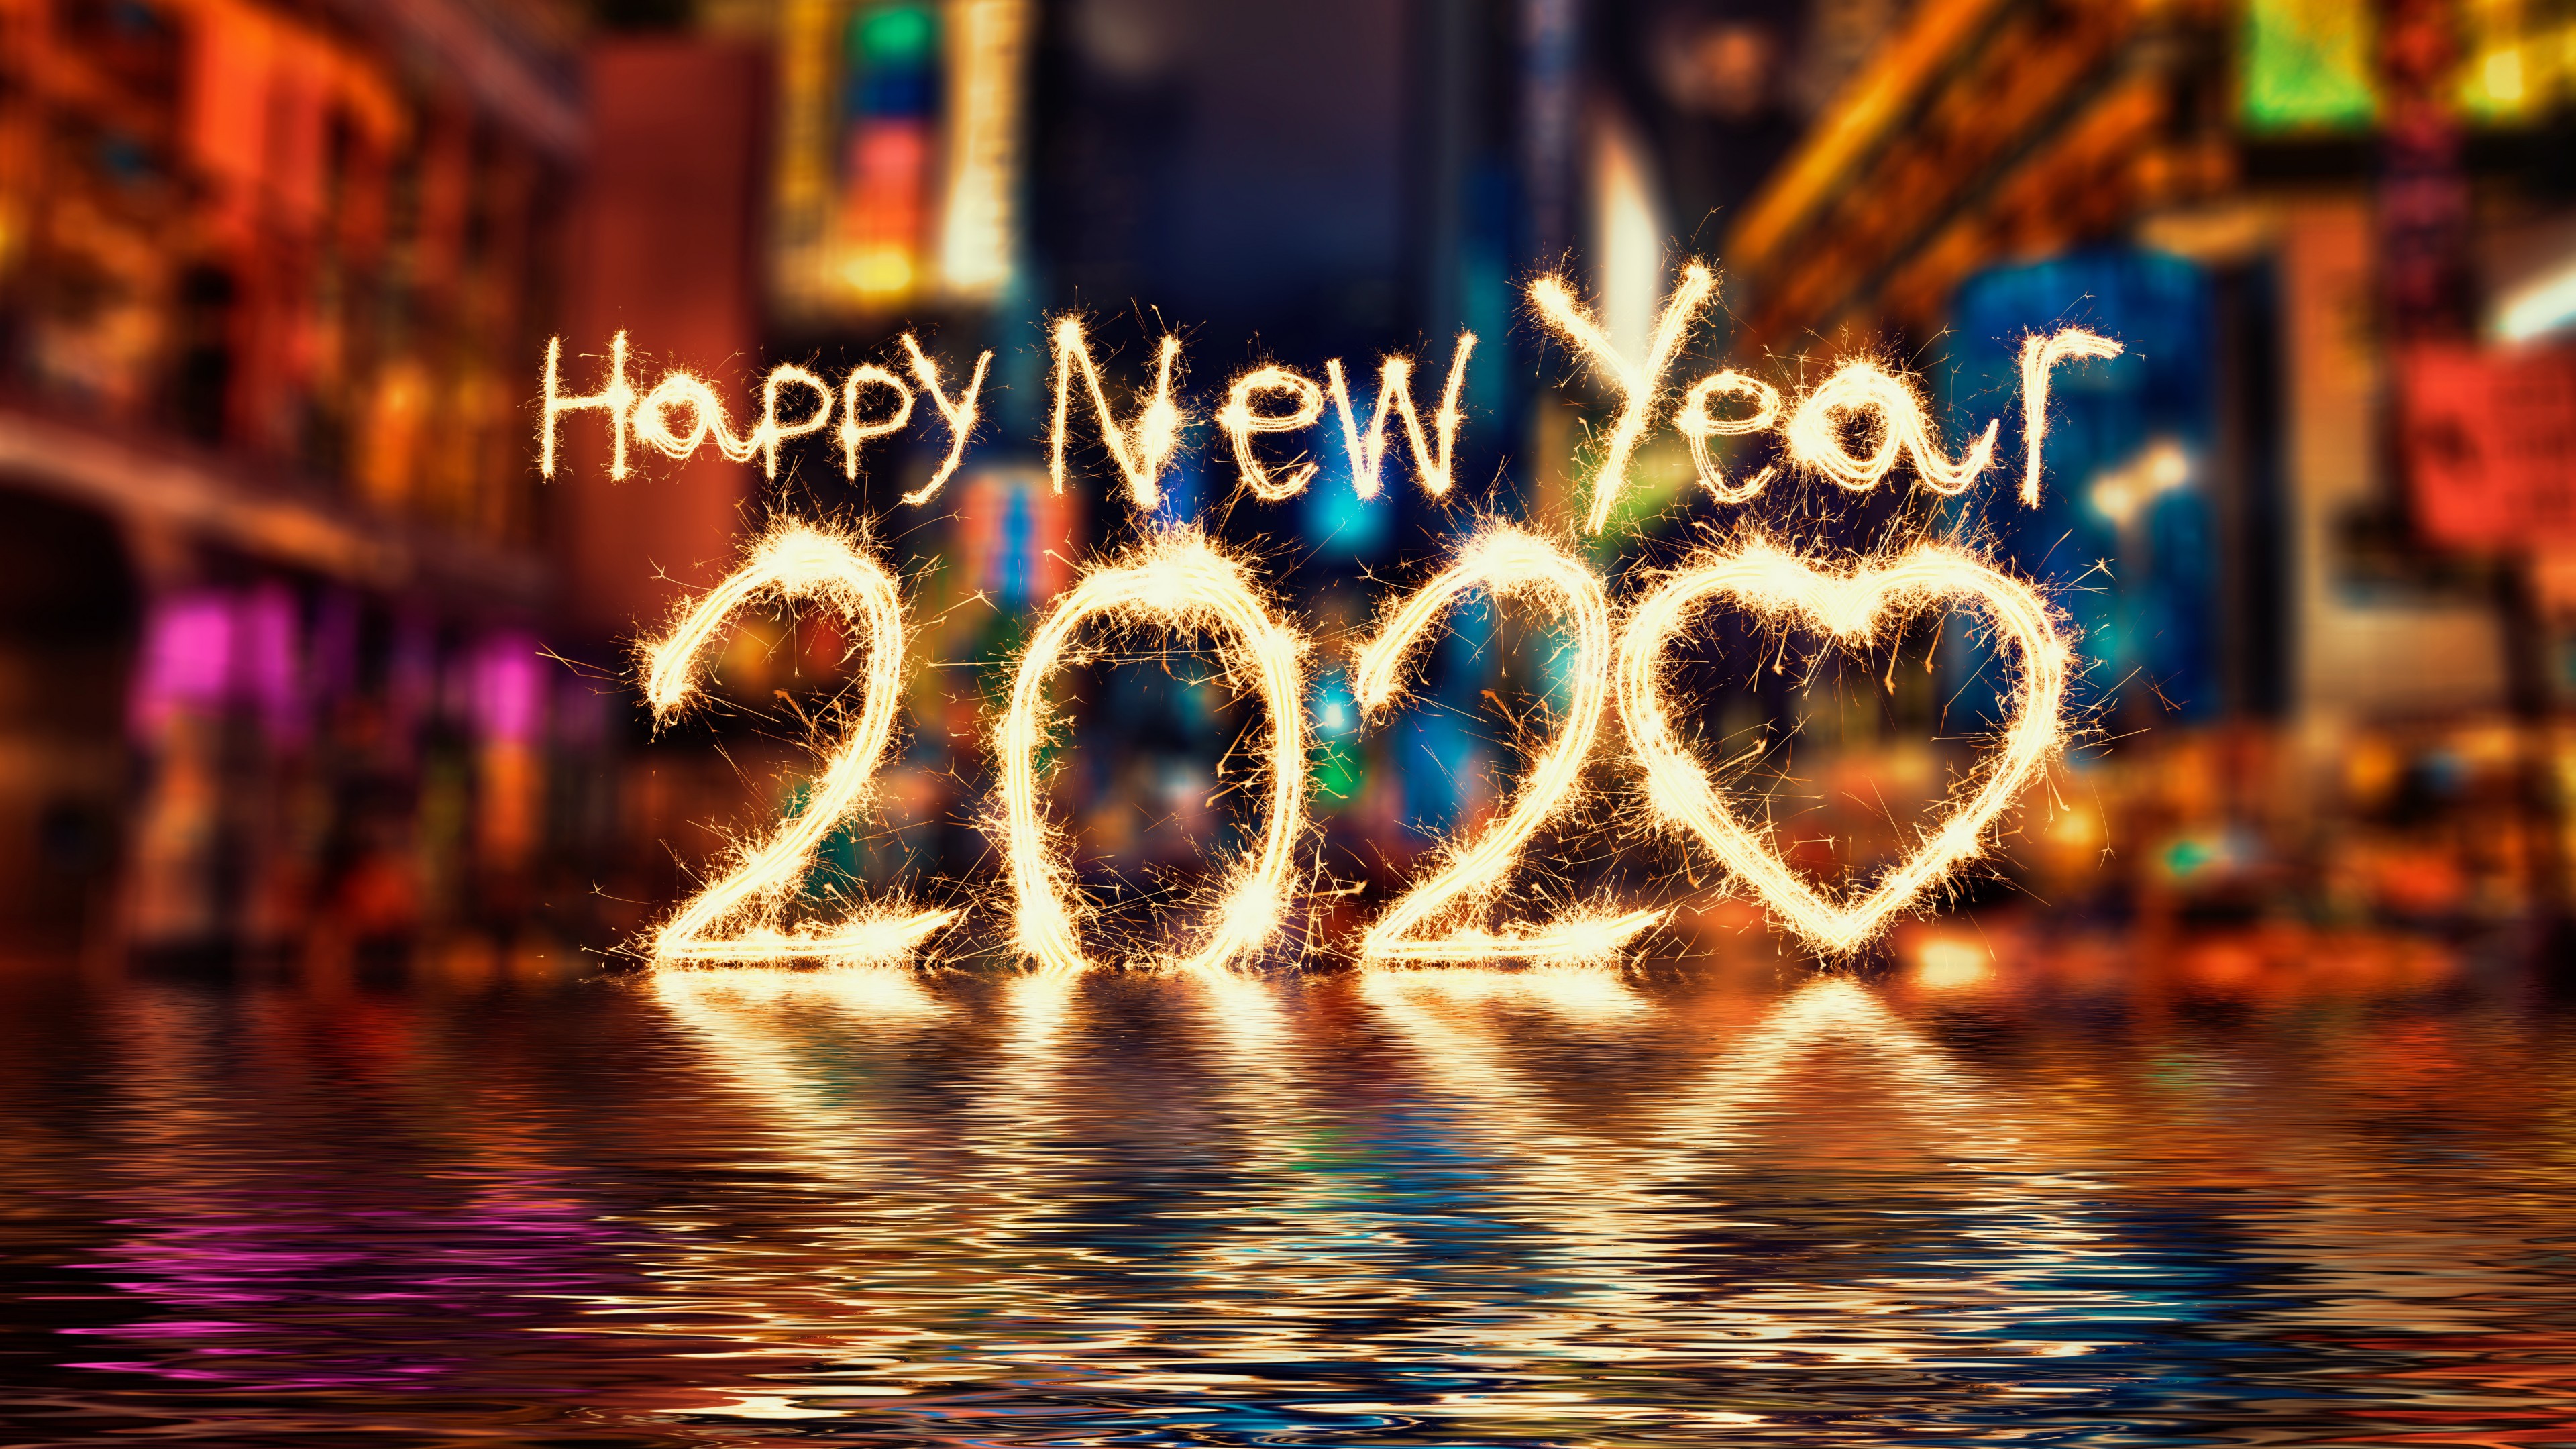 Happy New Year 2020 HD Wallpaper 4K for Desktop 3840x2160